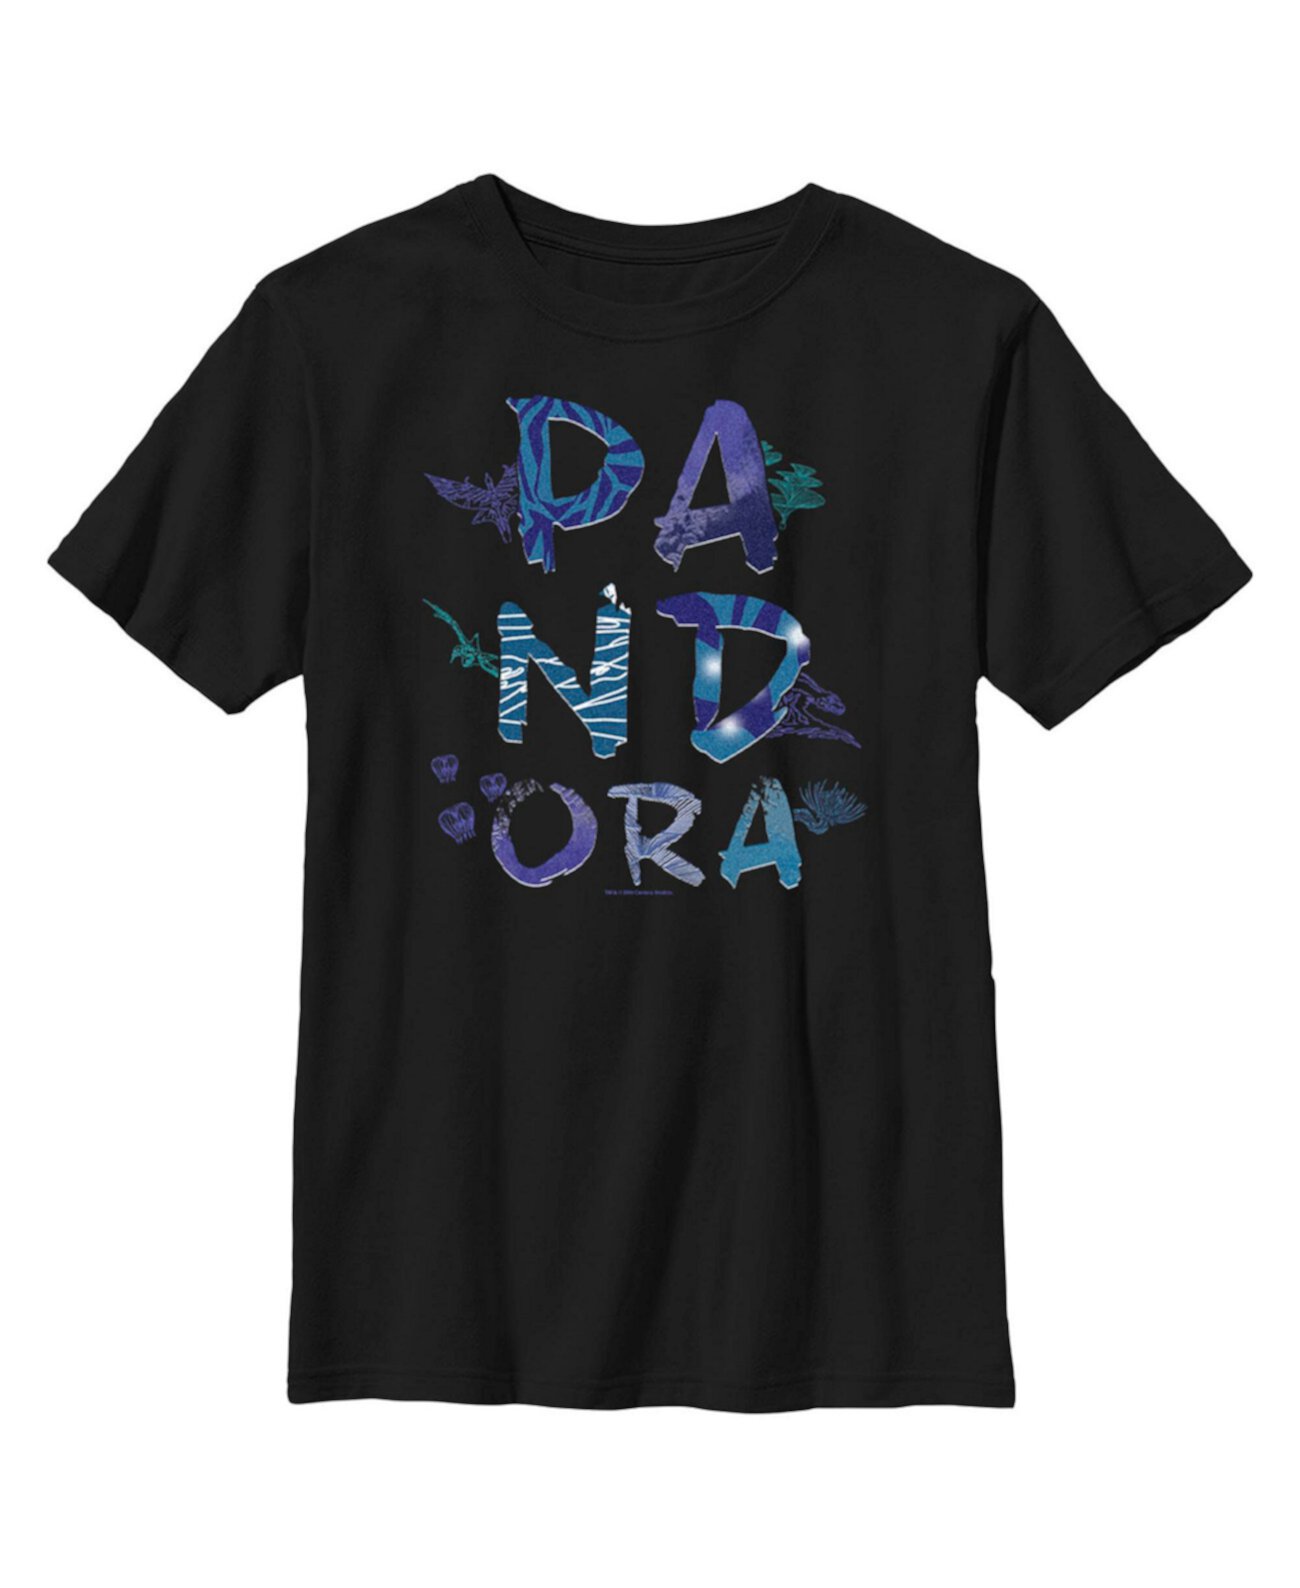 Детская футболка с логотипом Pandora Flora and Fauna Avatar для мальчиков 20th Century Fox